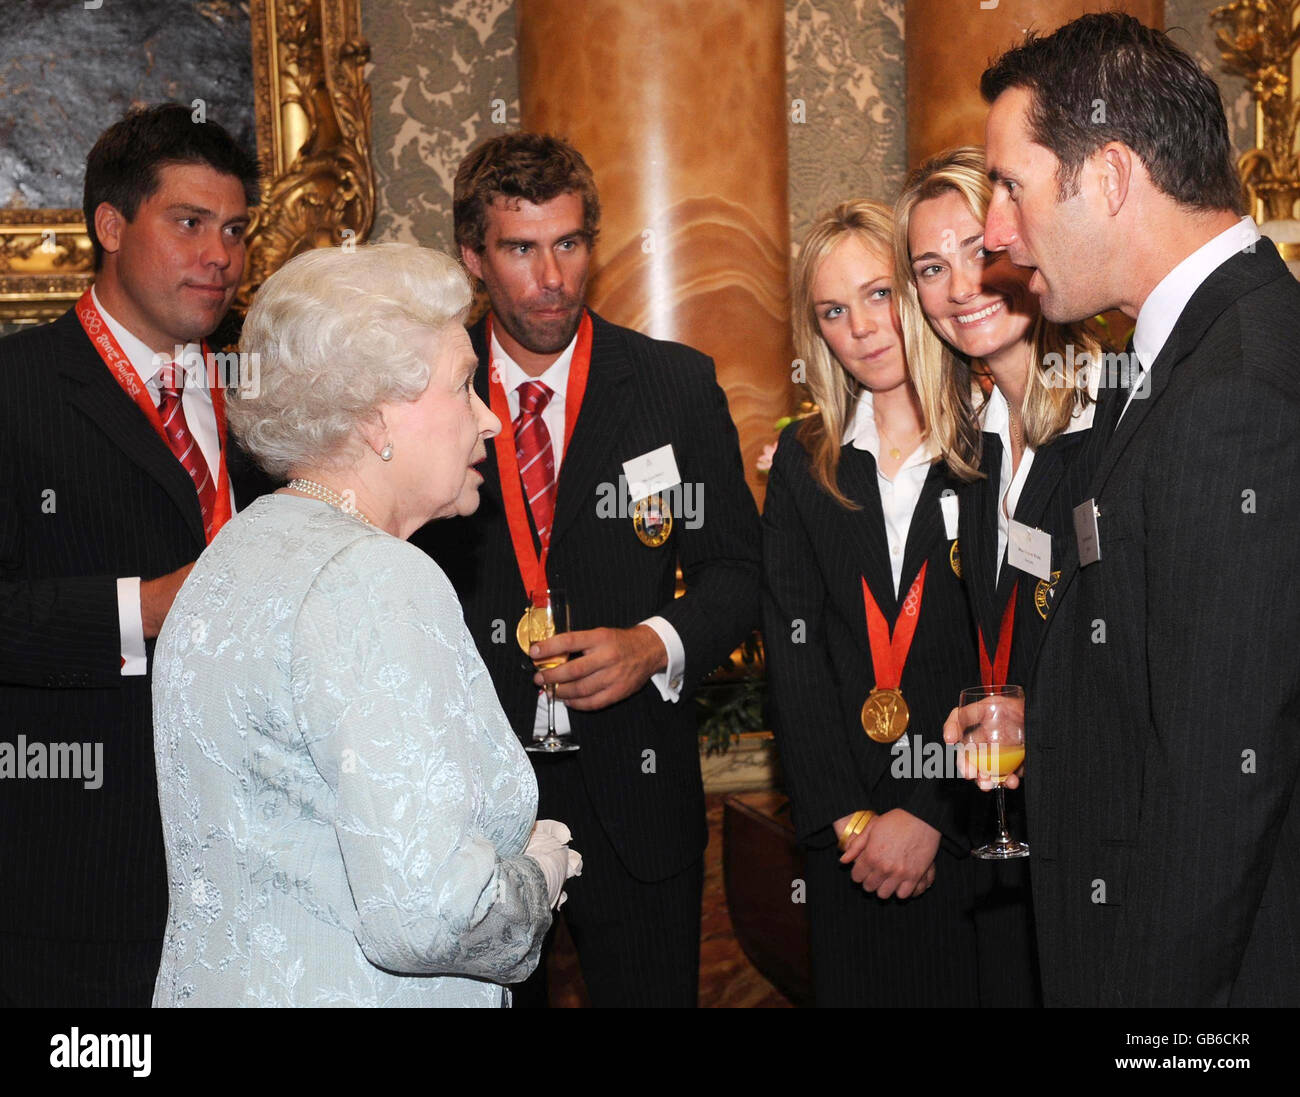 La Regina Elisabetta II incontra il medagliere olimpico ben Ainslie (a destra) durante il ricevimento del Team GB delle Olimpiadi di Pechino a Buckingham Palace a Londra. Foto Stock